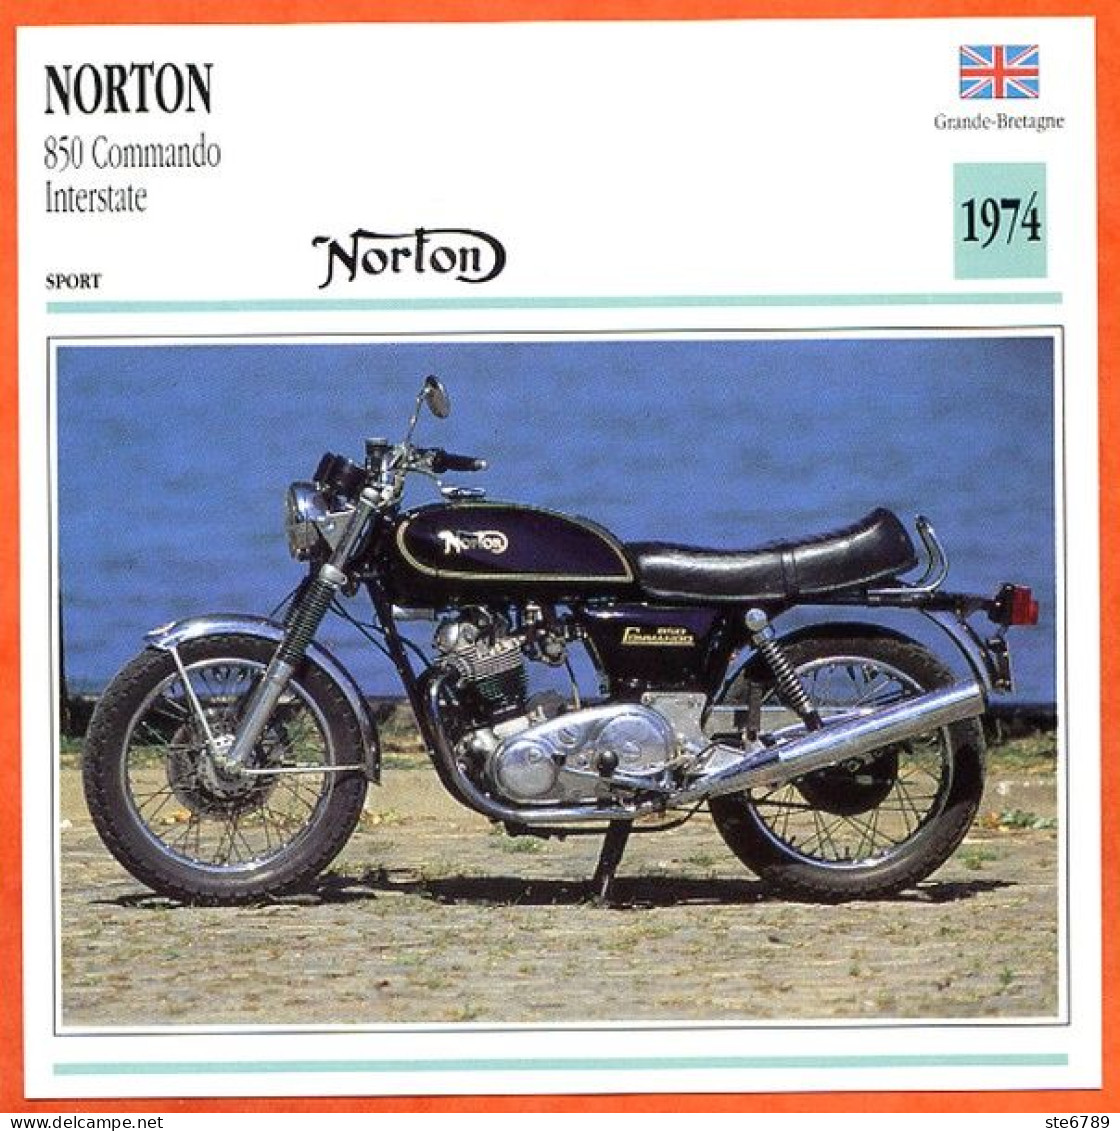 NORTON 850 Commando  1974 UK Fiche Technique Moto - Sport